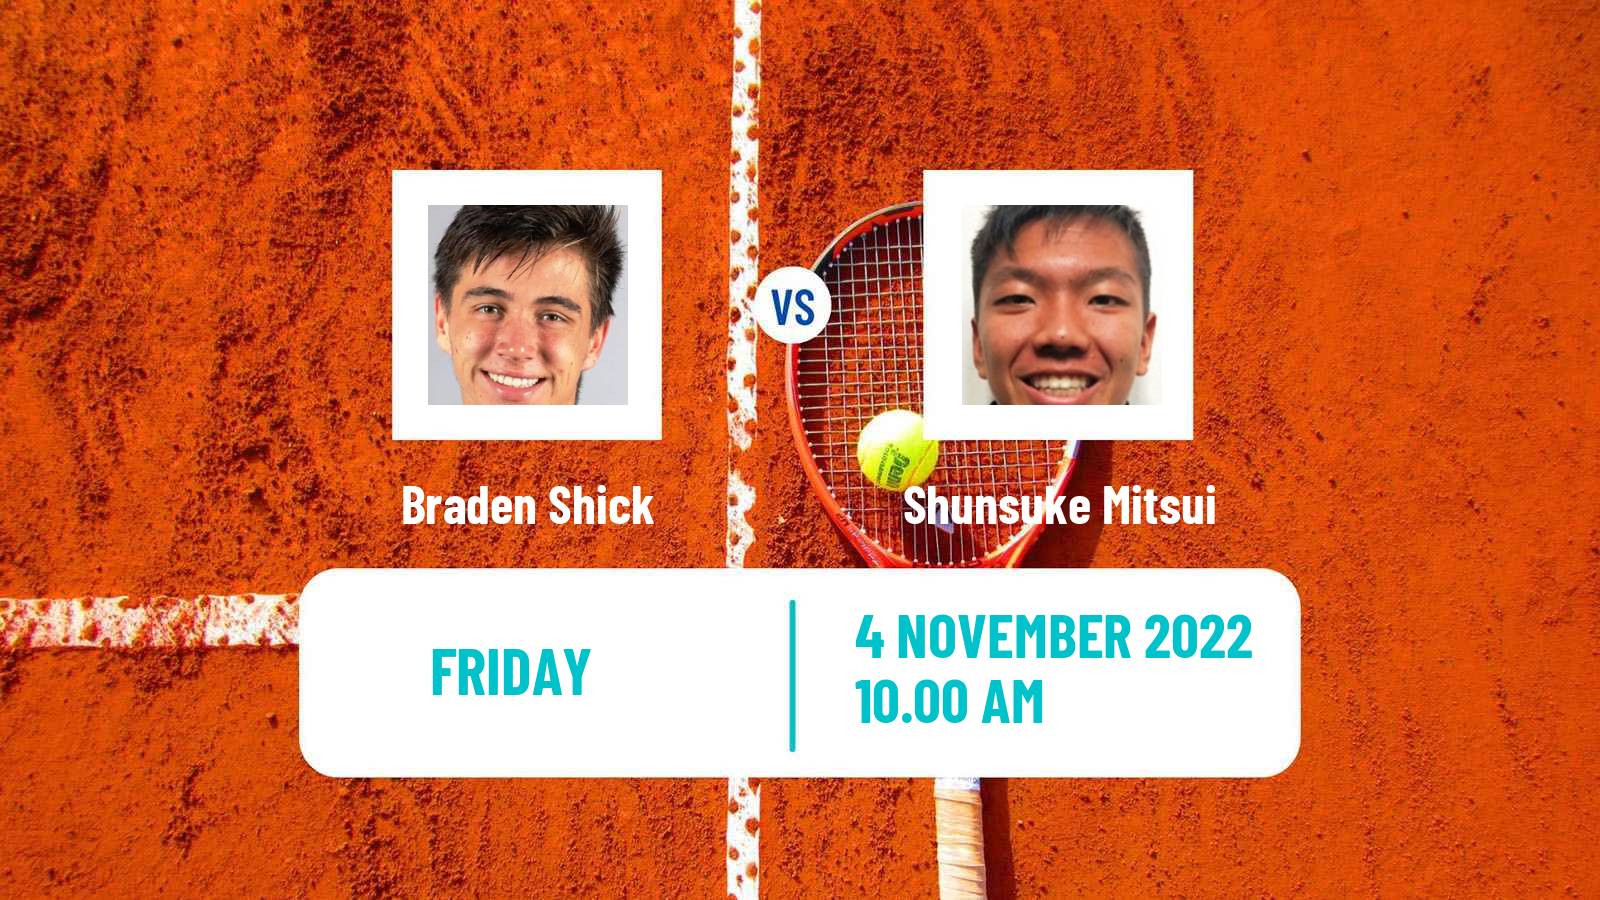 Tennis ITF Tournaments Braden Shick - Shunsuke Mitsui